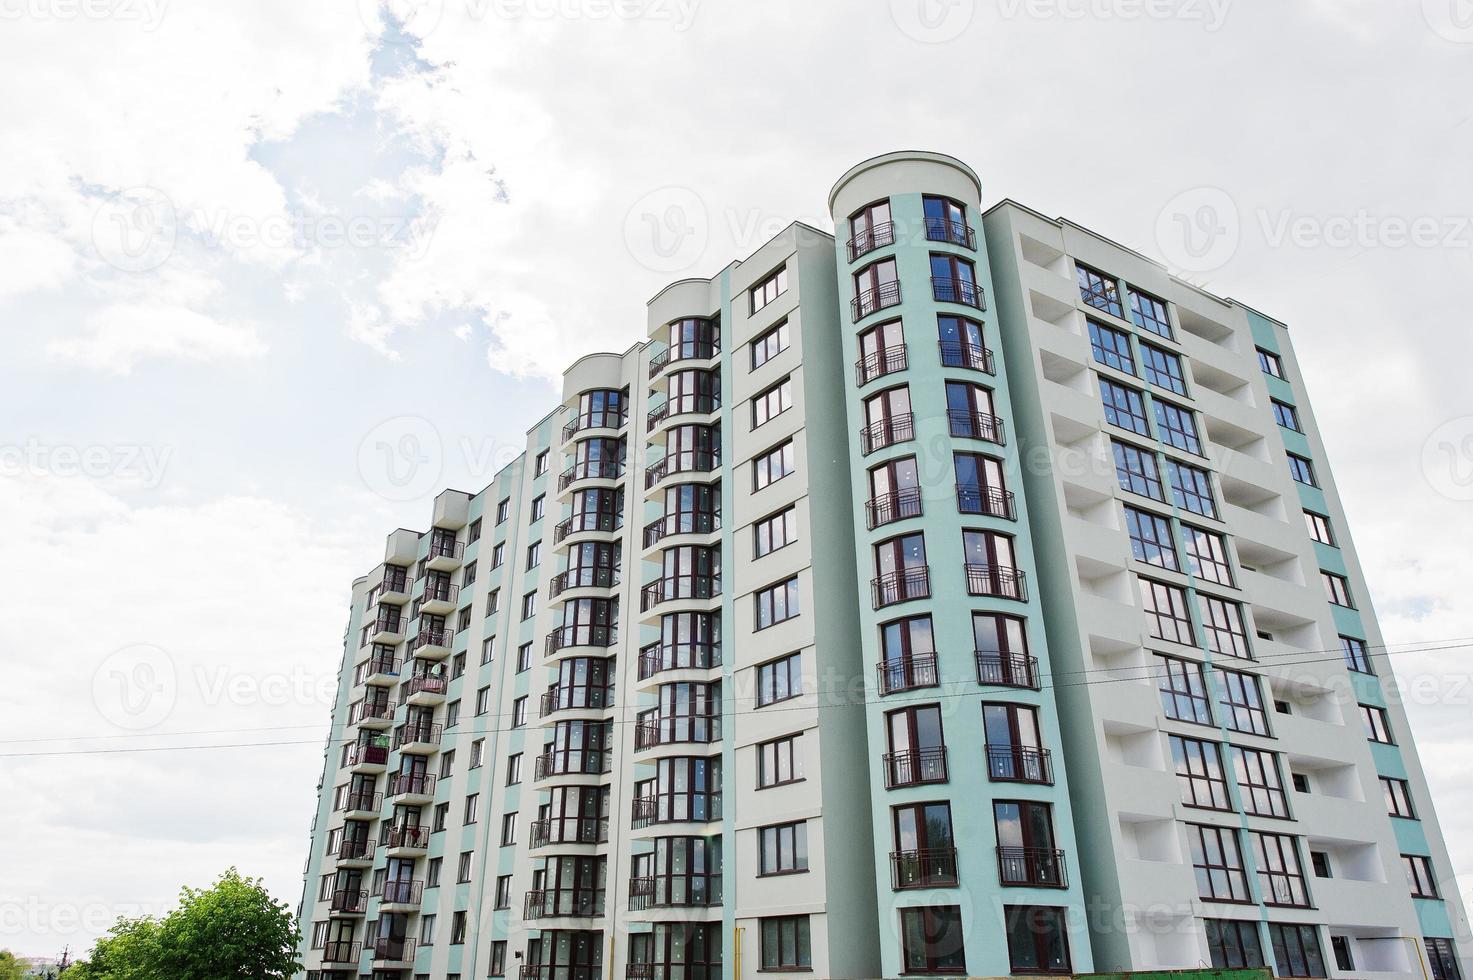 varanda da nova casa de construção residencial de vários andares turquesa moderna em área residencial no céu azul ensolarado. foto